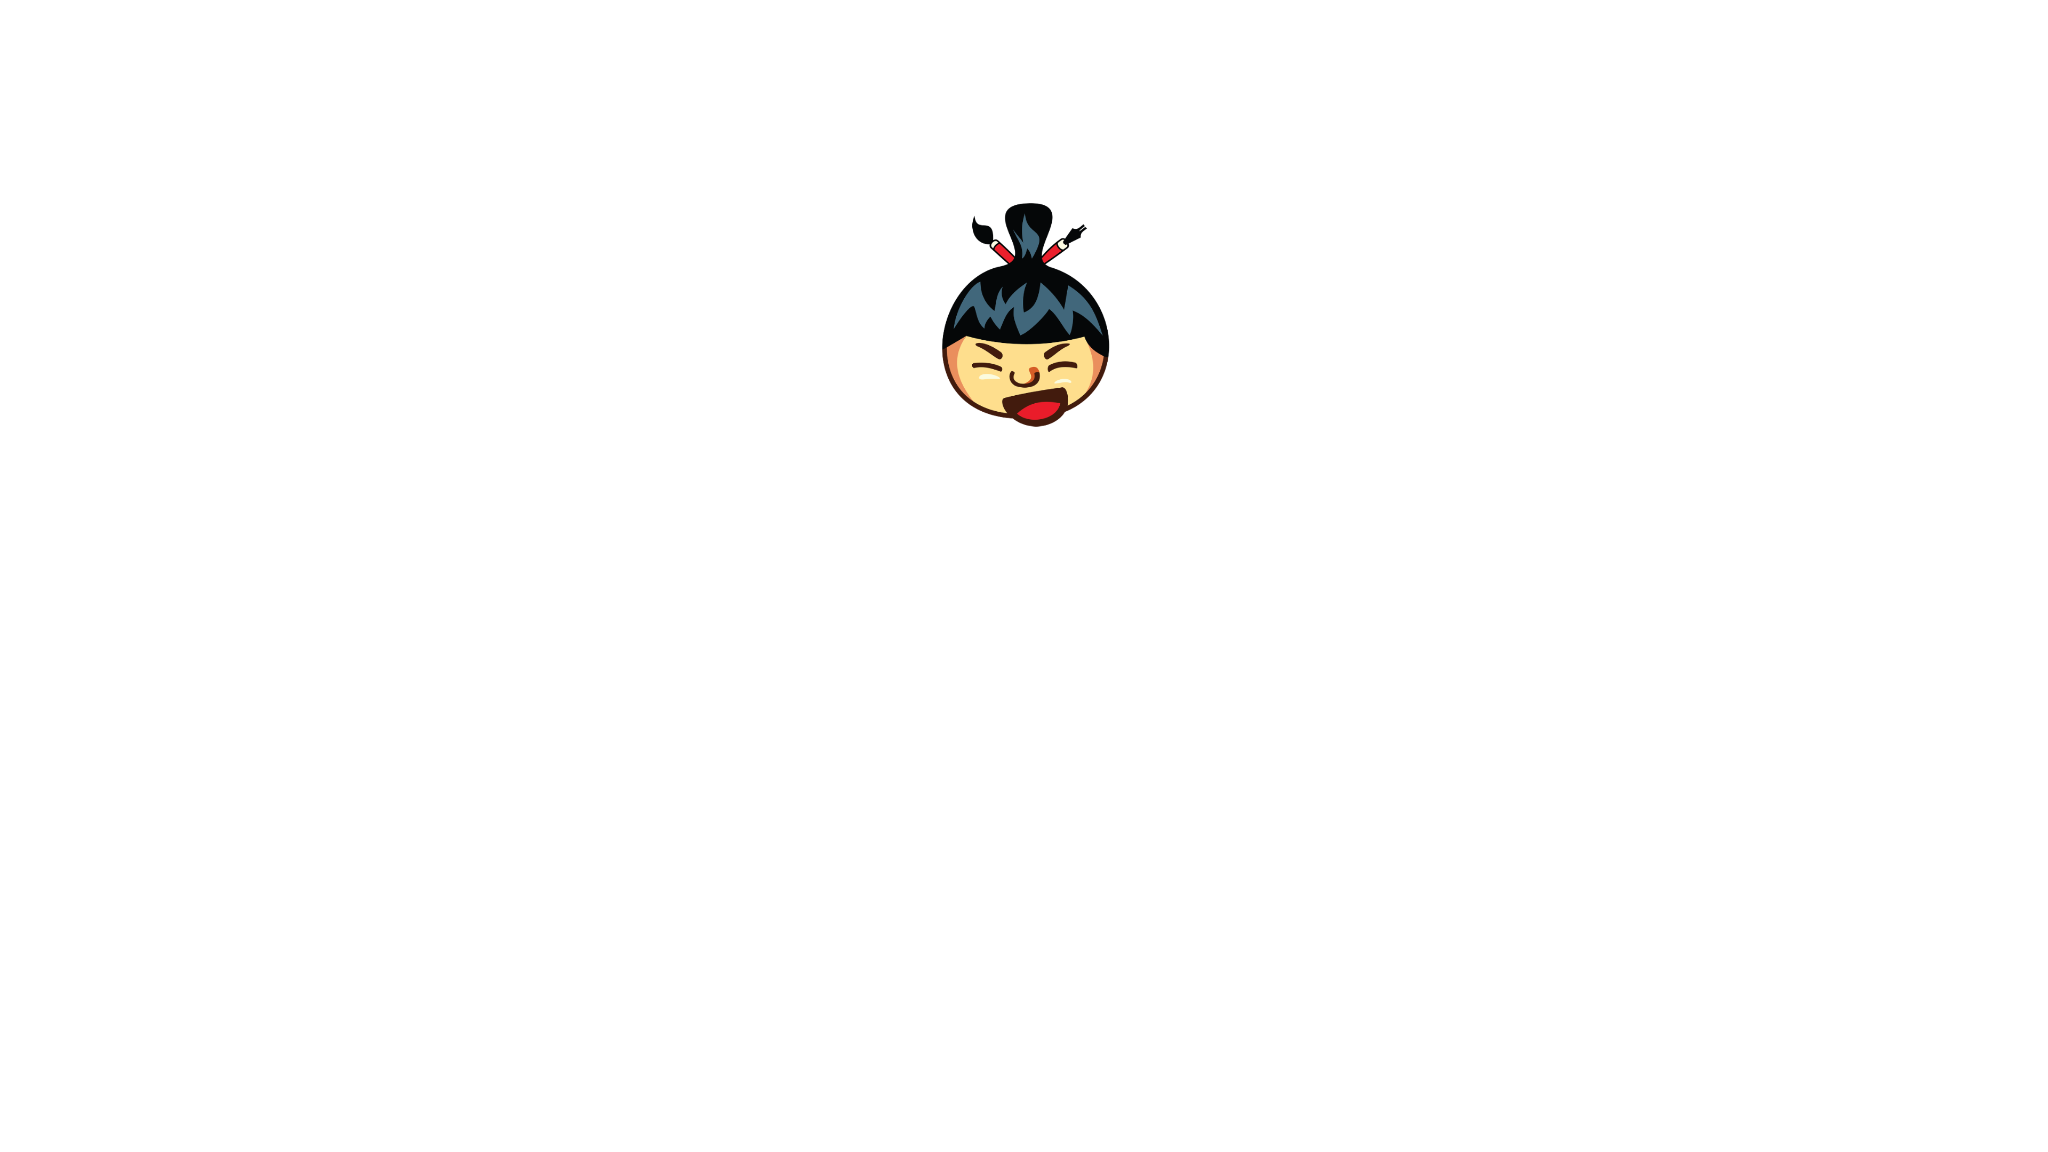 Sumo Video Intro - opprettet av Lauri Koutaniemi med paint